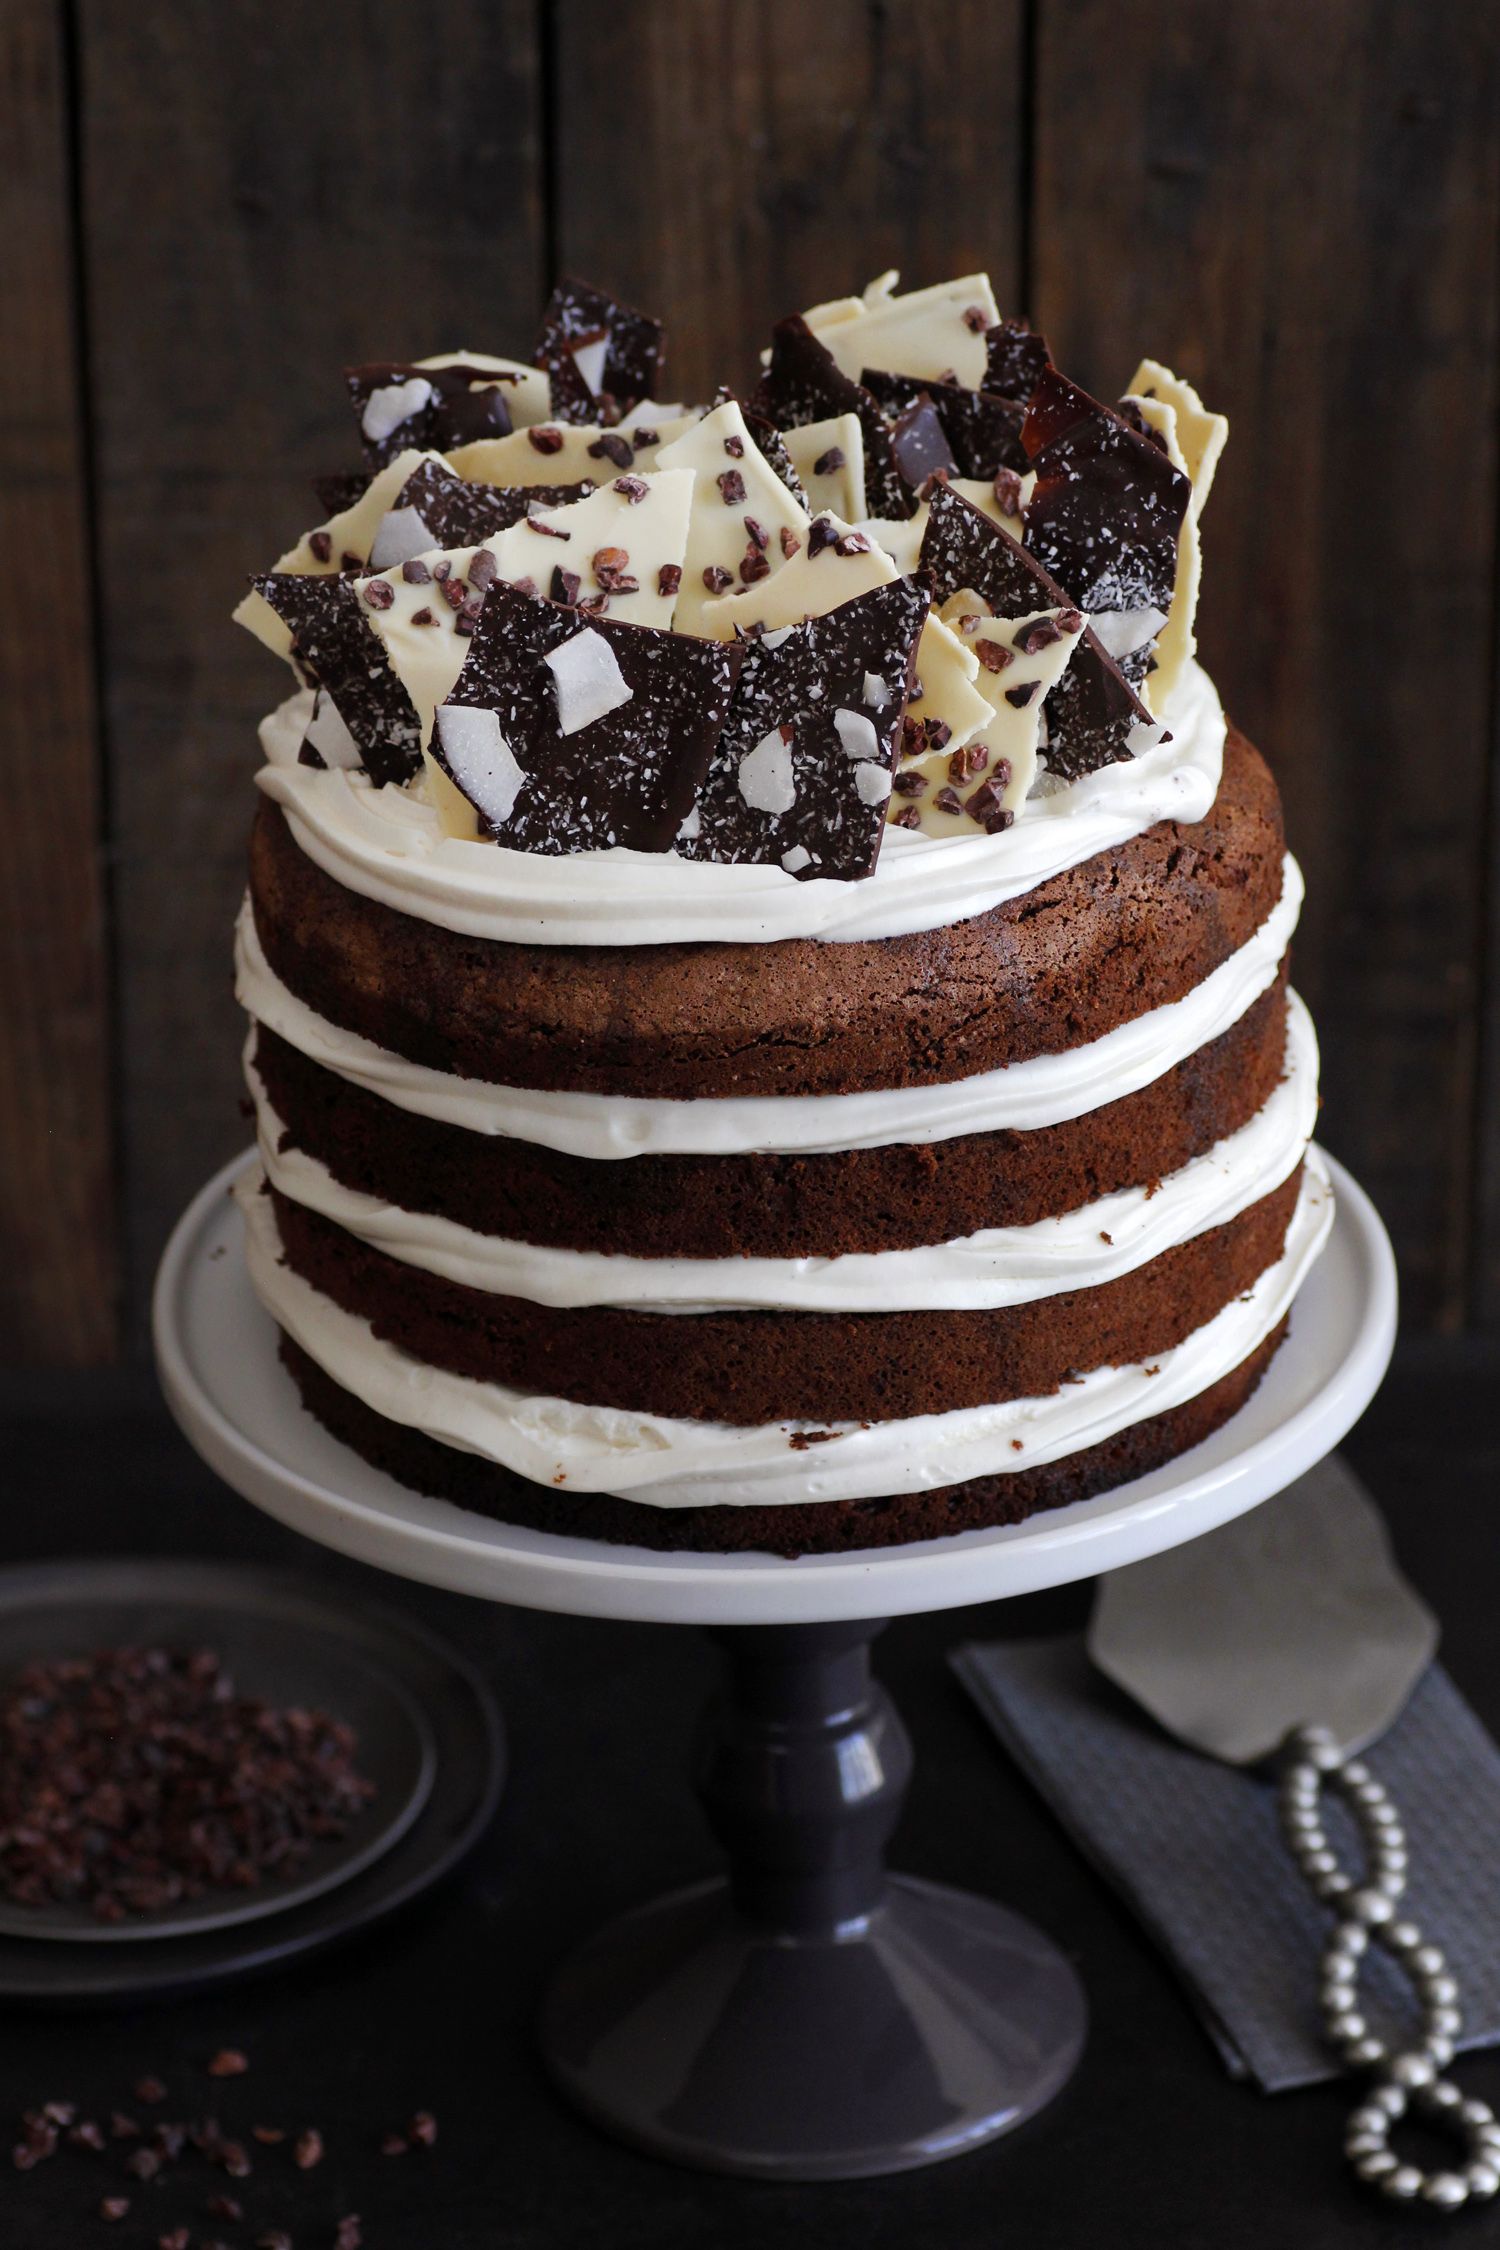 עוגת שכבות שוקולד במילוי מוס שוקולד לבן | צילום: נטלי לוין